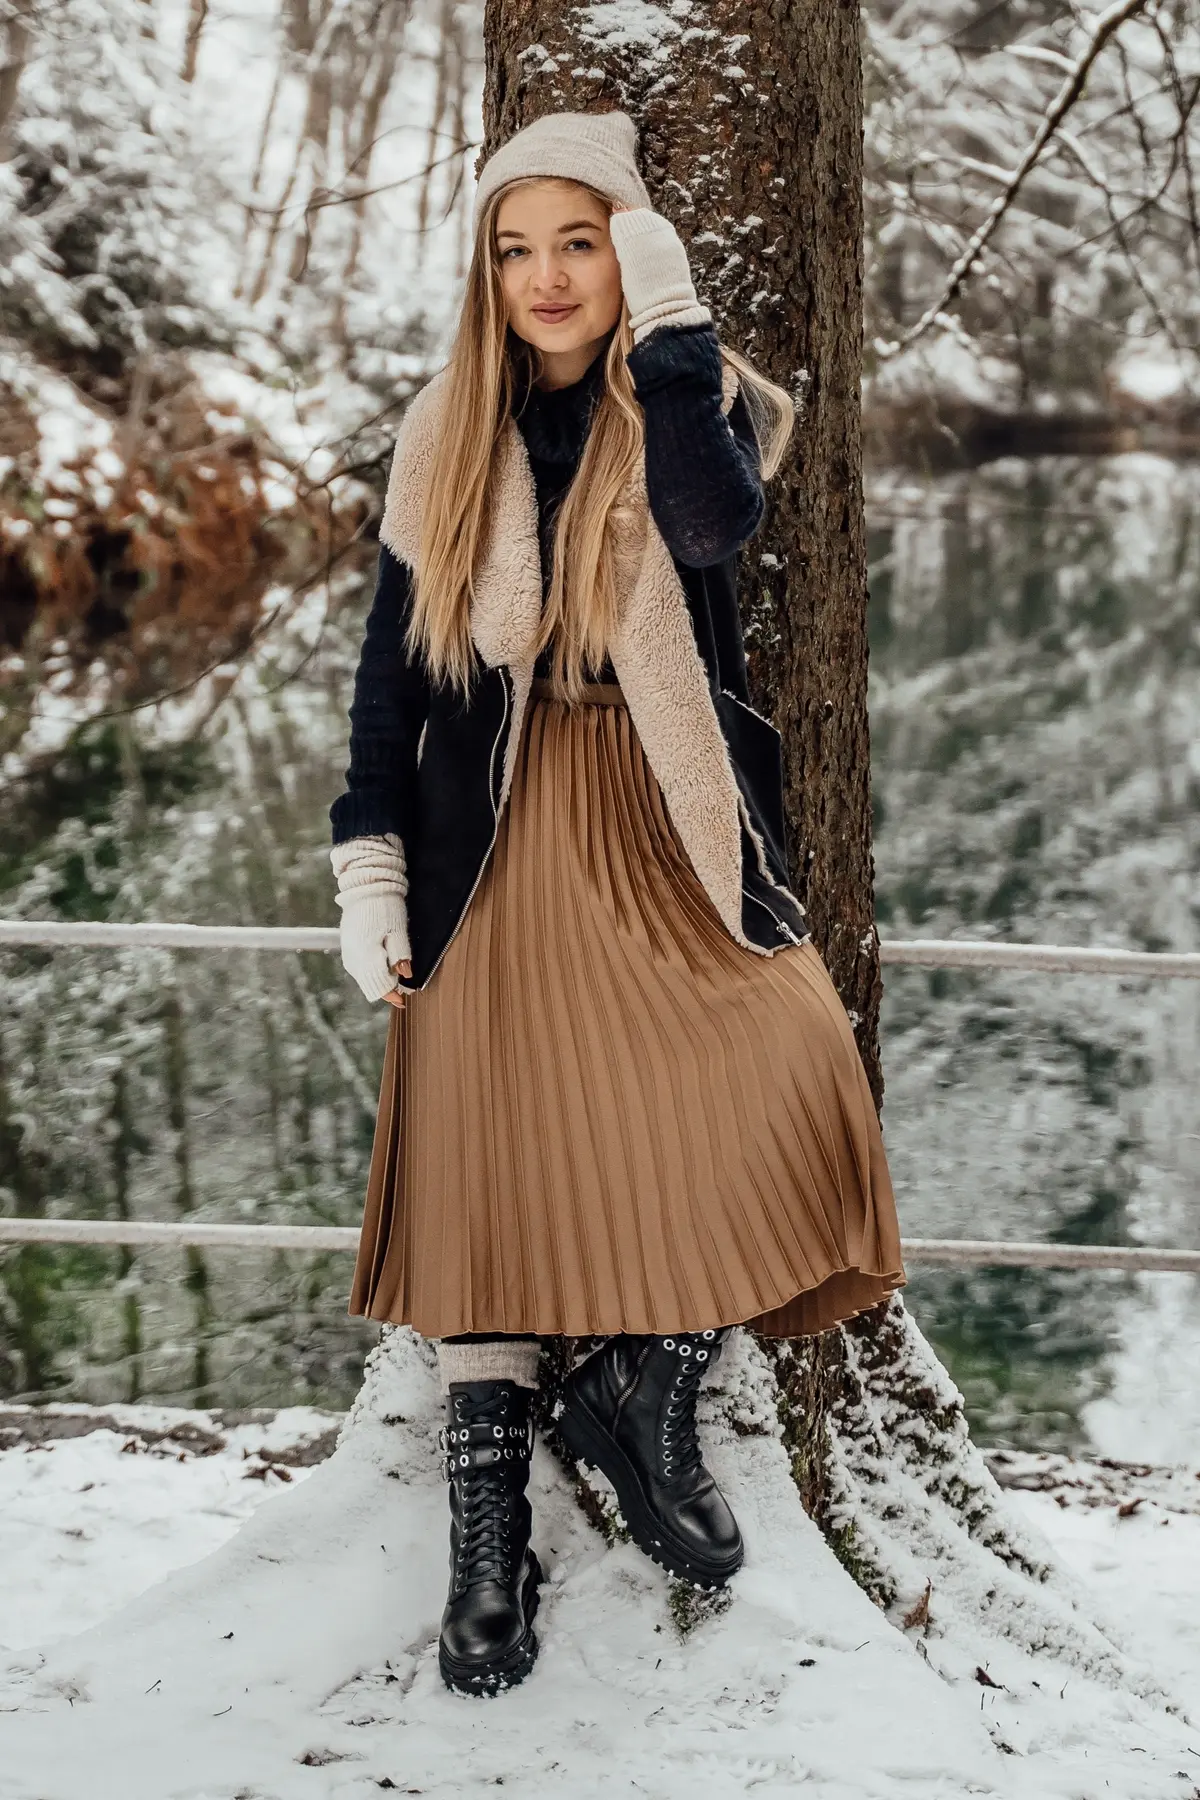 100 denier tights keep warm under pleated skirt in winter